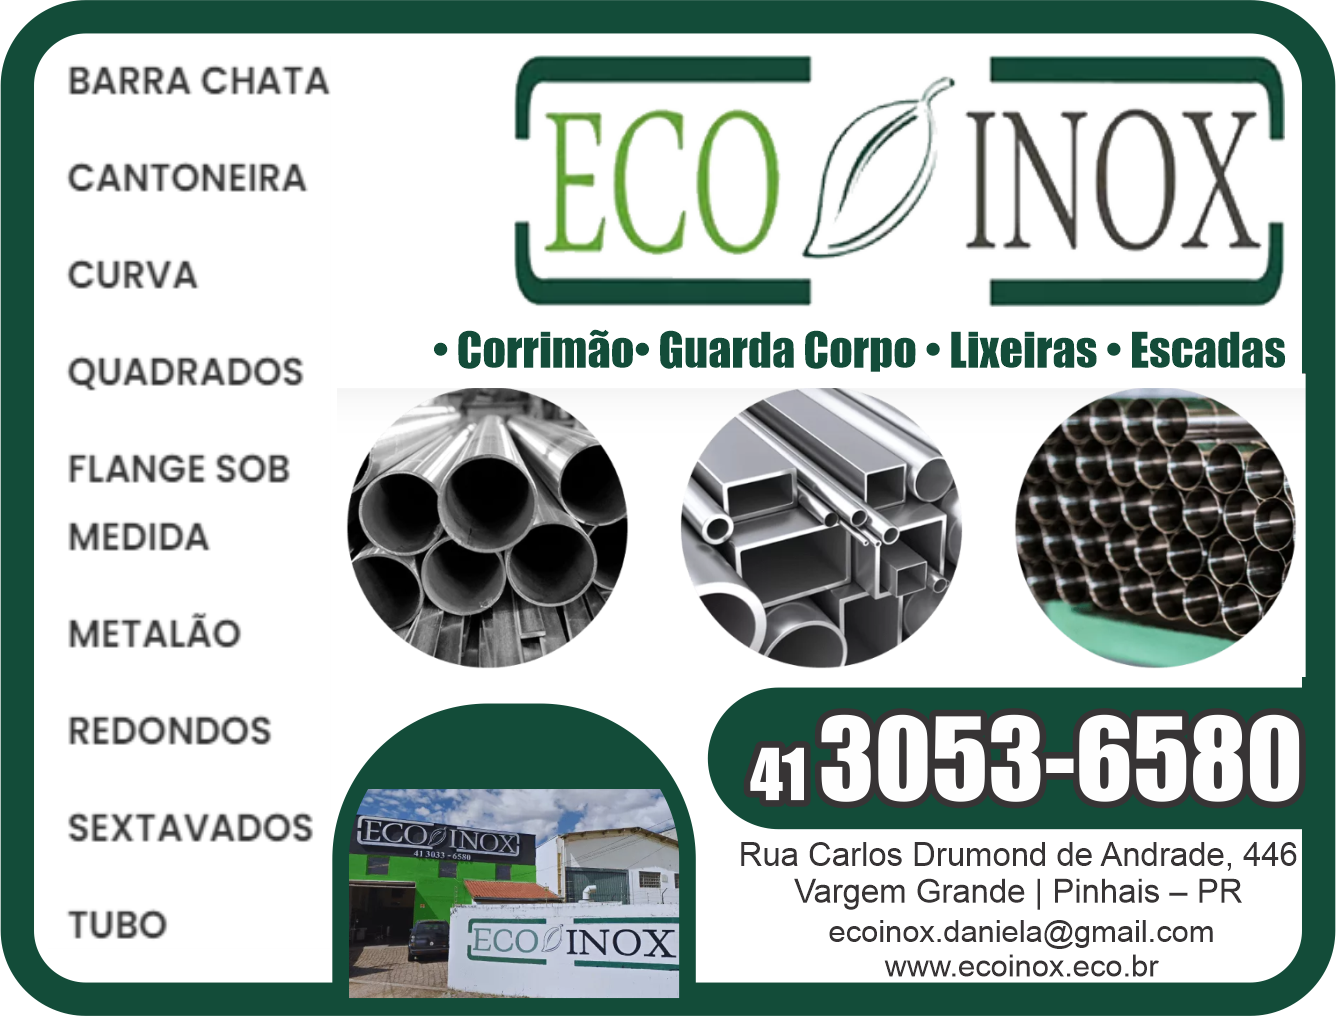 Eco Inox Corrimão, Guarda Corpo, Lixeiras, Escadas      RUA CARLOS DRUMOND DE ANDRADE, 446, PINHAIS - PR  Fones: (41)3053-6580 /